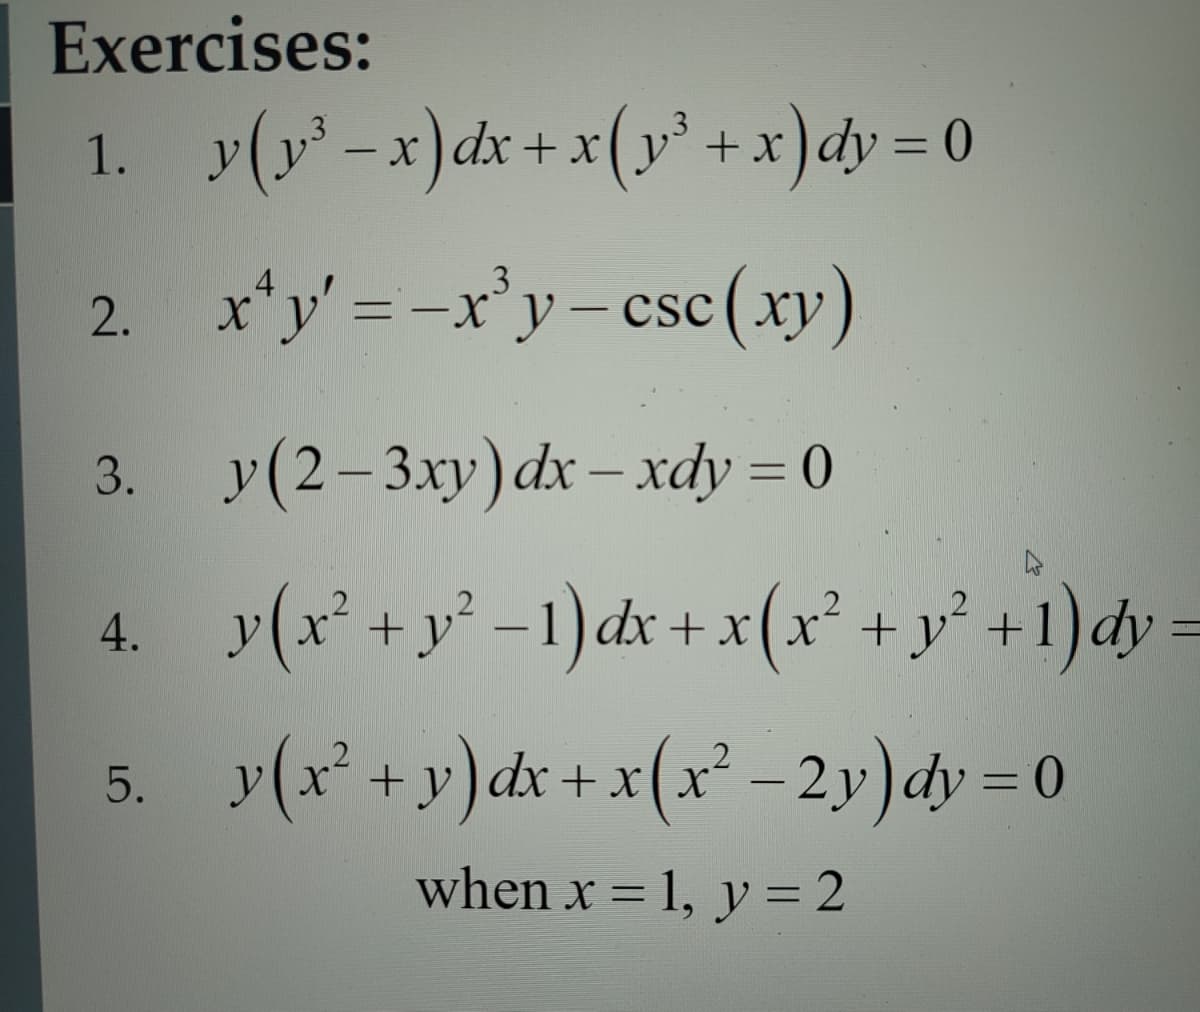 Exercises:
1. y(y²-x) dx + x(y² + x)dy=0
2.
3.
4.
4
x'y' = -x³y-csc (xy)
CSC
y(2-3xy) dx - xdy = 0
y(x² + y² −1)dx + x(x² + y² +1) dy=
5. y(x² + y)dx + x(x² − 2y)dy = 0
when x = 1, y = 2